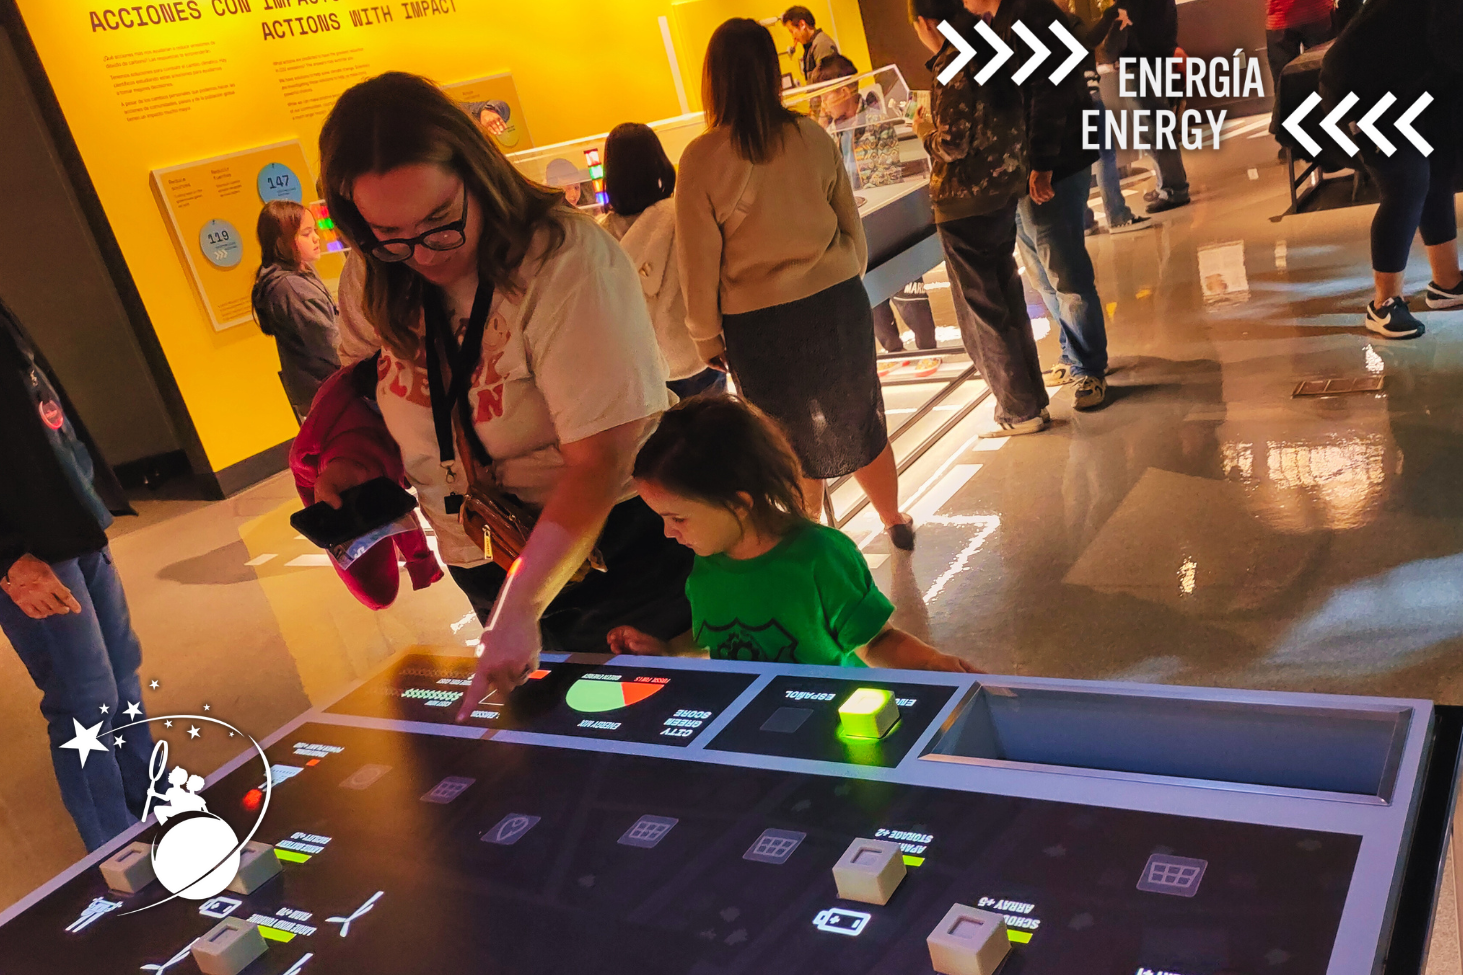 ディスカバリー子供博物館のエネルギー展示で、幼い娘にテーブルの情報を教える母親。